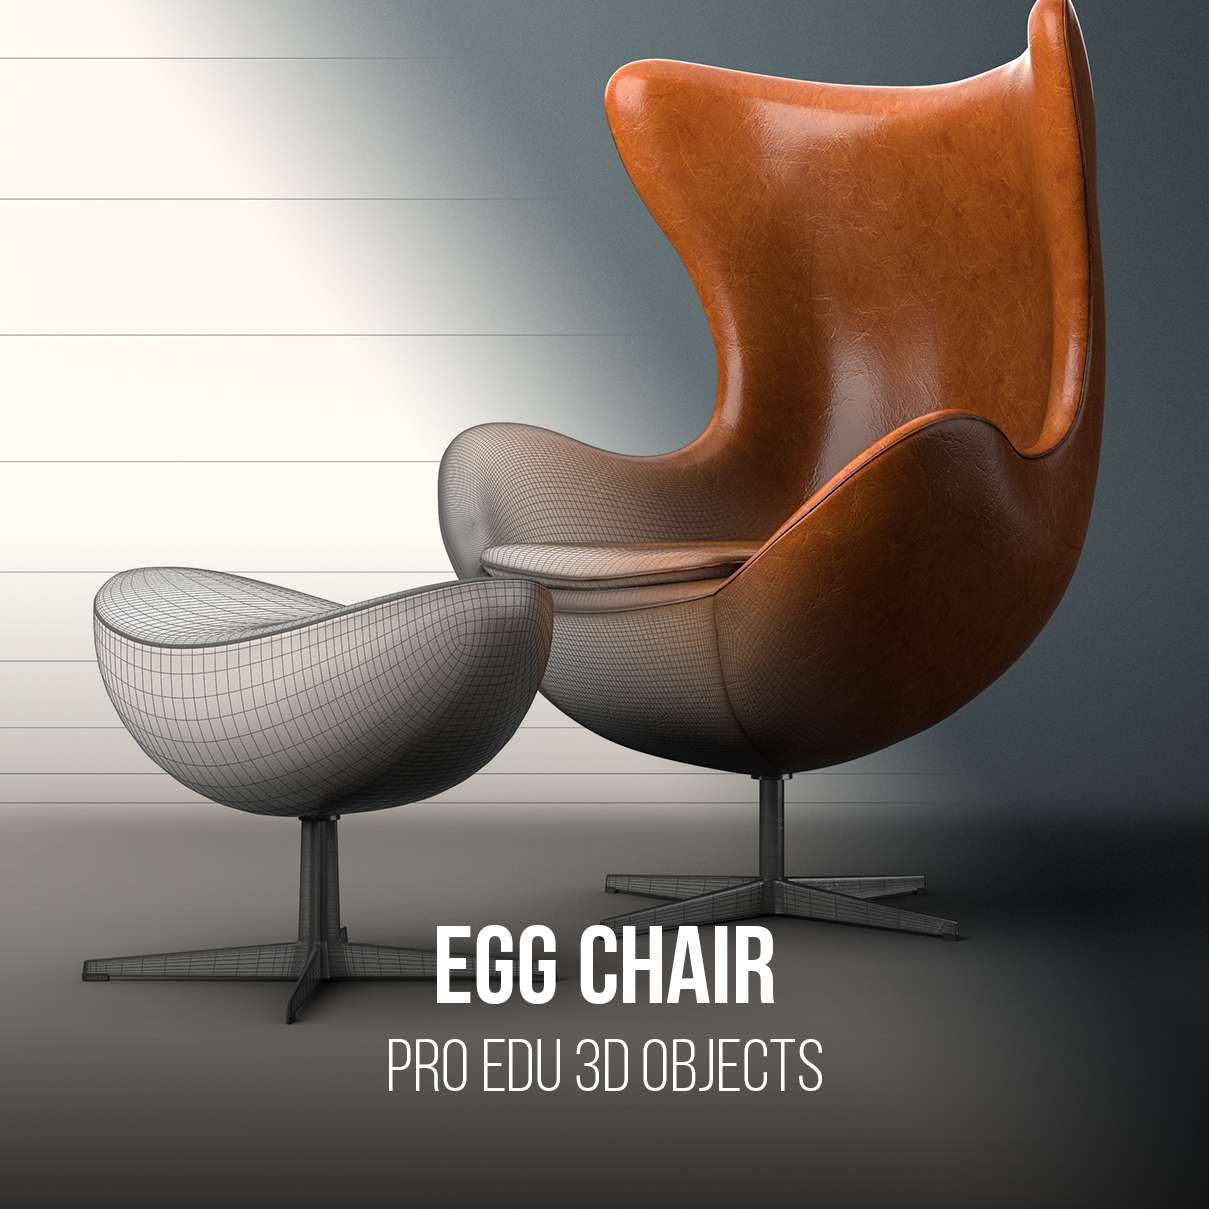 Arne Jacobsen Chair 3D Model for Photoshop - PRO EDU PRO EDU PRO EDU